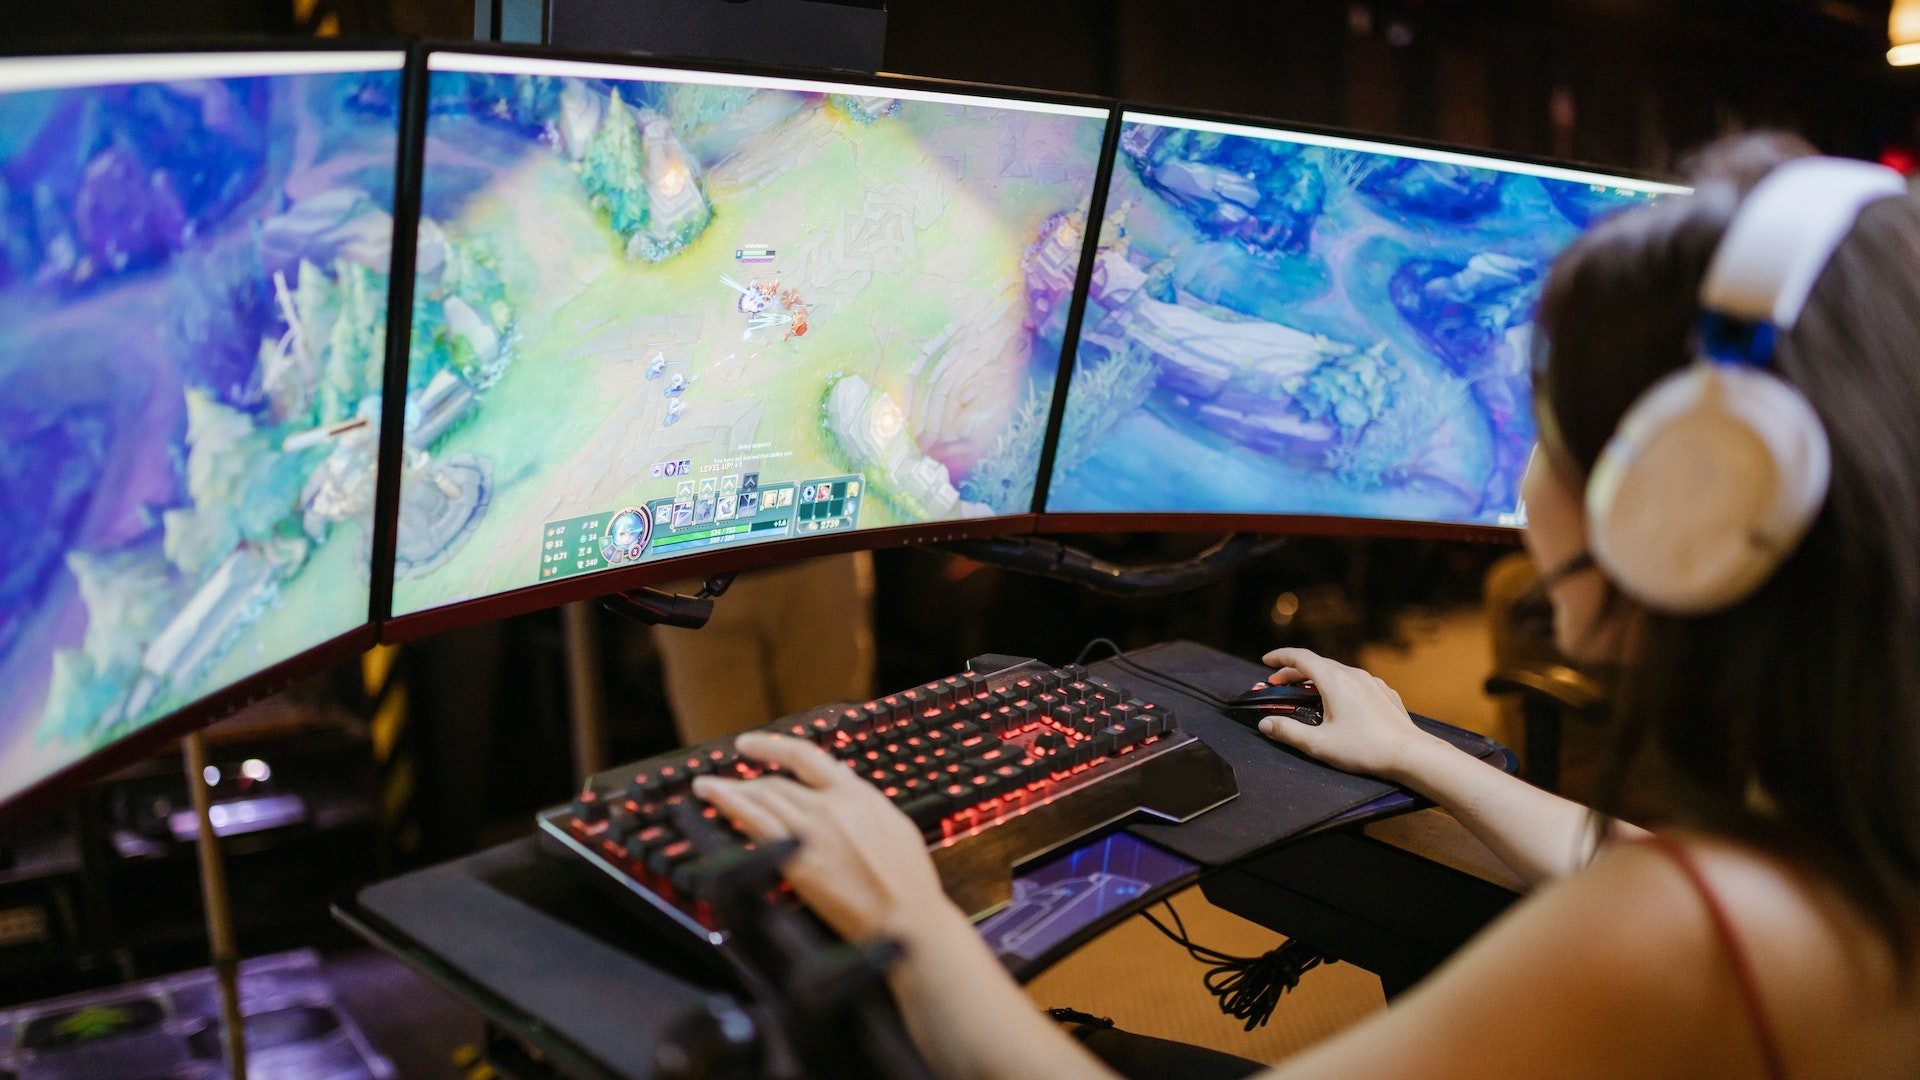 Eine Frau spielt das Computerspiel "League of Legends" auf drei Bildschirmen